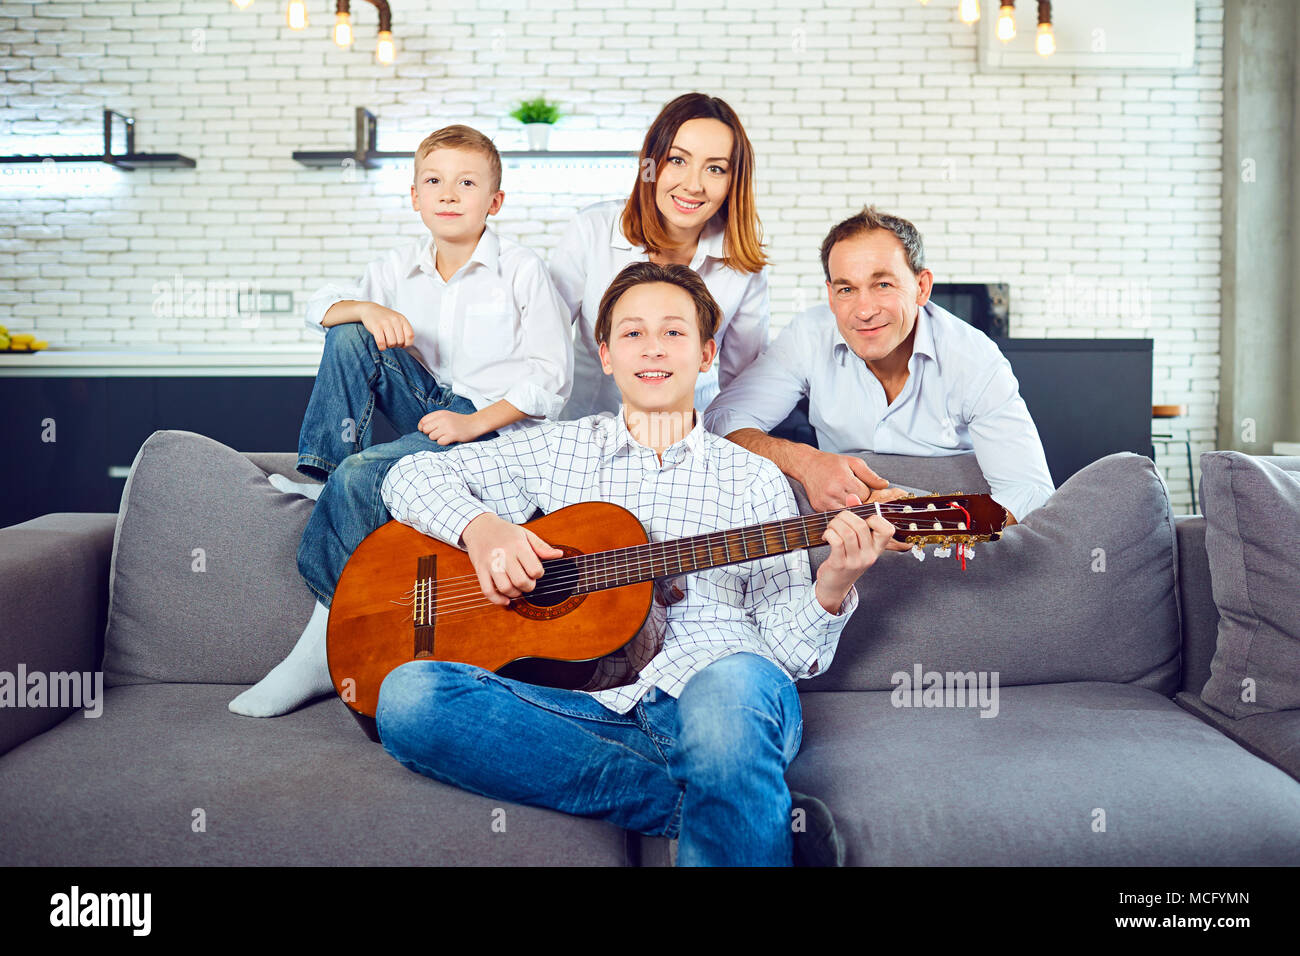 Glückliche Familie mit Gitarre Lieder singen im Zimmer sitzen  Stockfotografie - Alamy